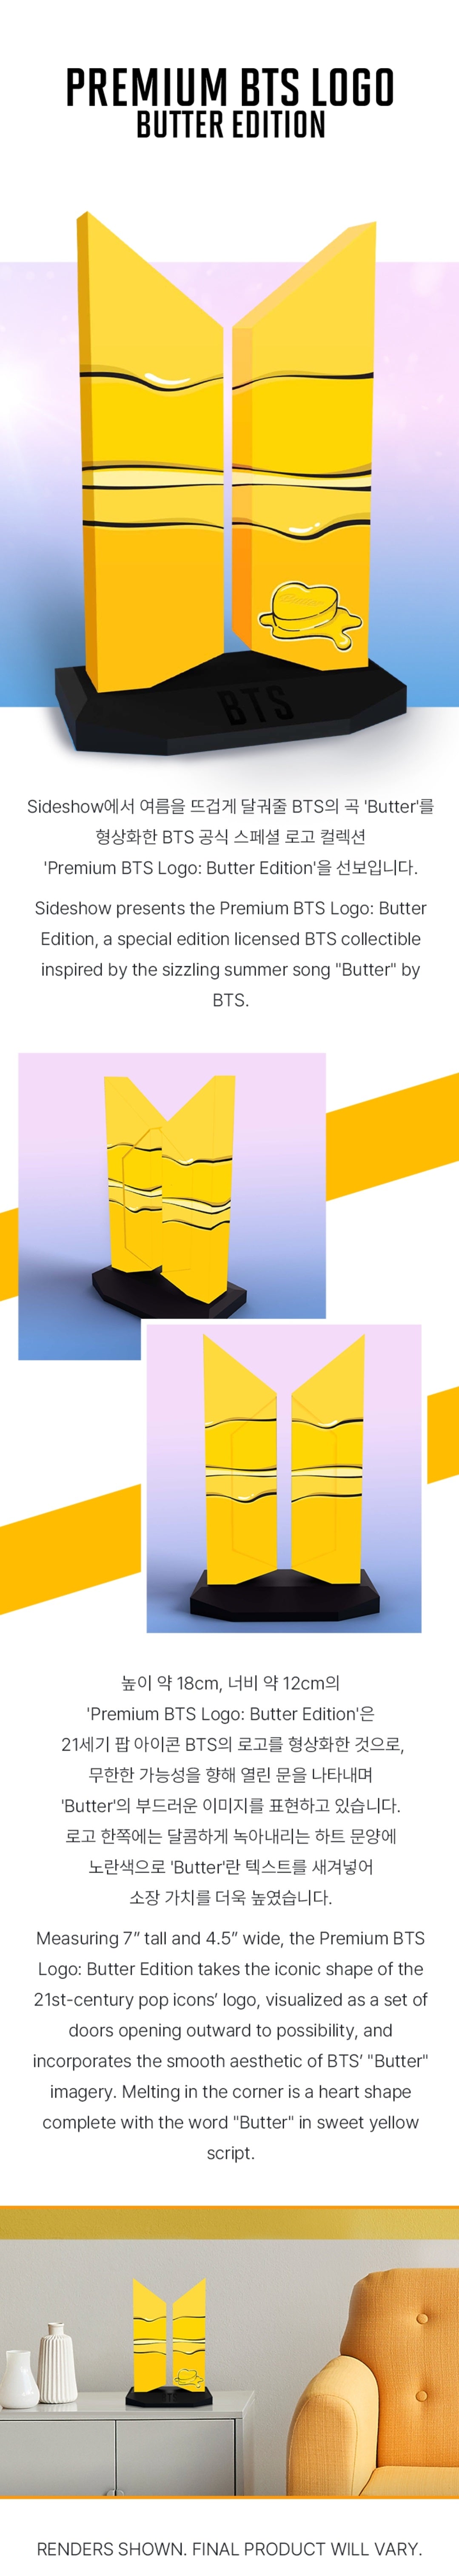 プレミアム BTS ロゴ: バター エディション